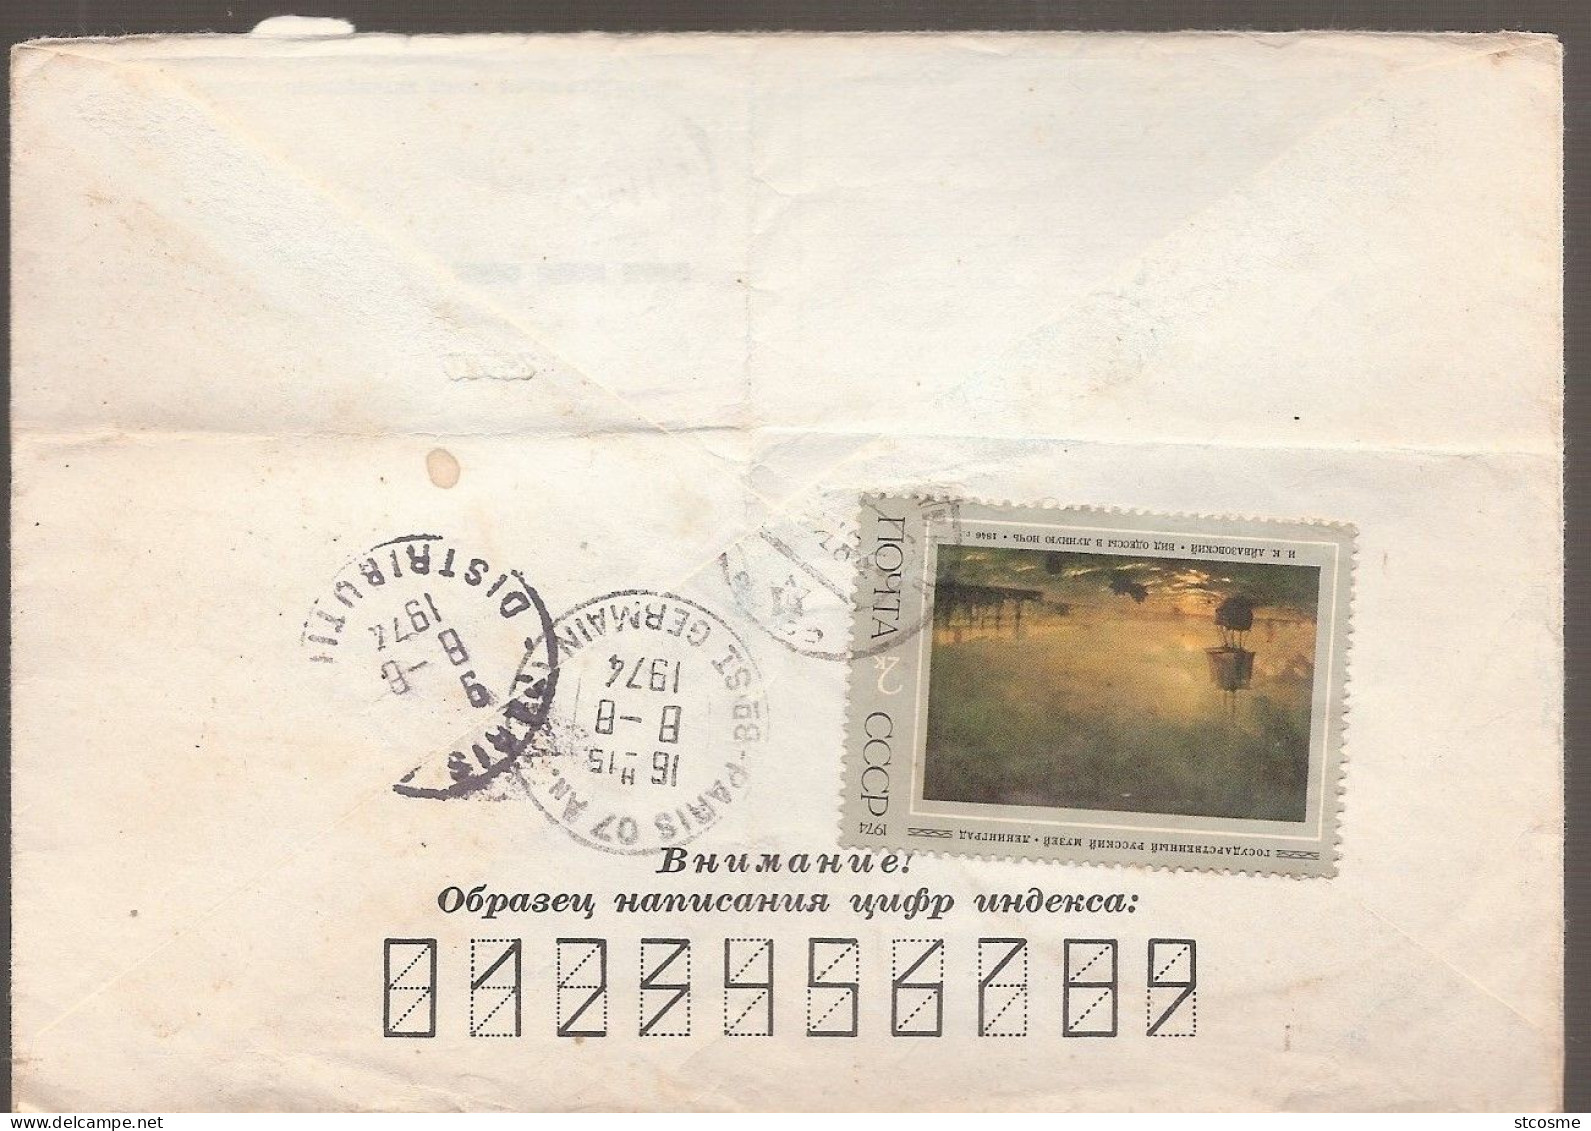 L459 - Entier Postal D'URSS En 1974, 4 KOP Blason - 1970-79